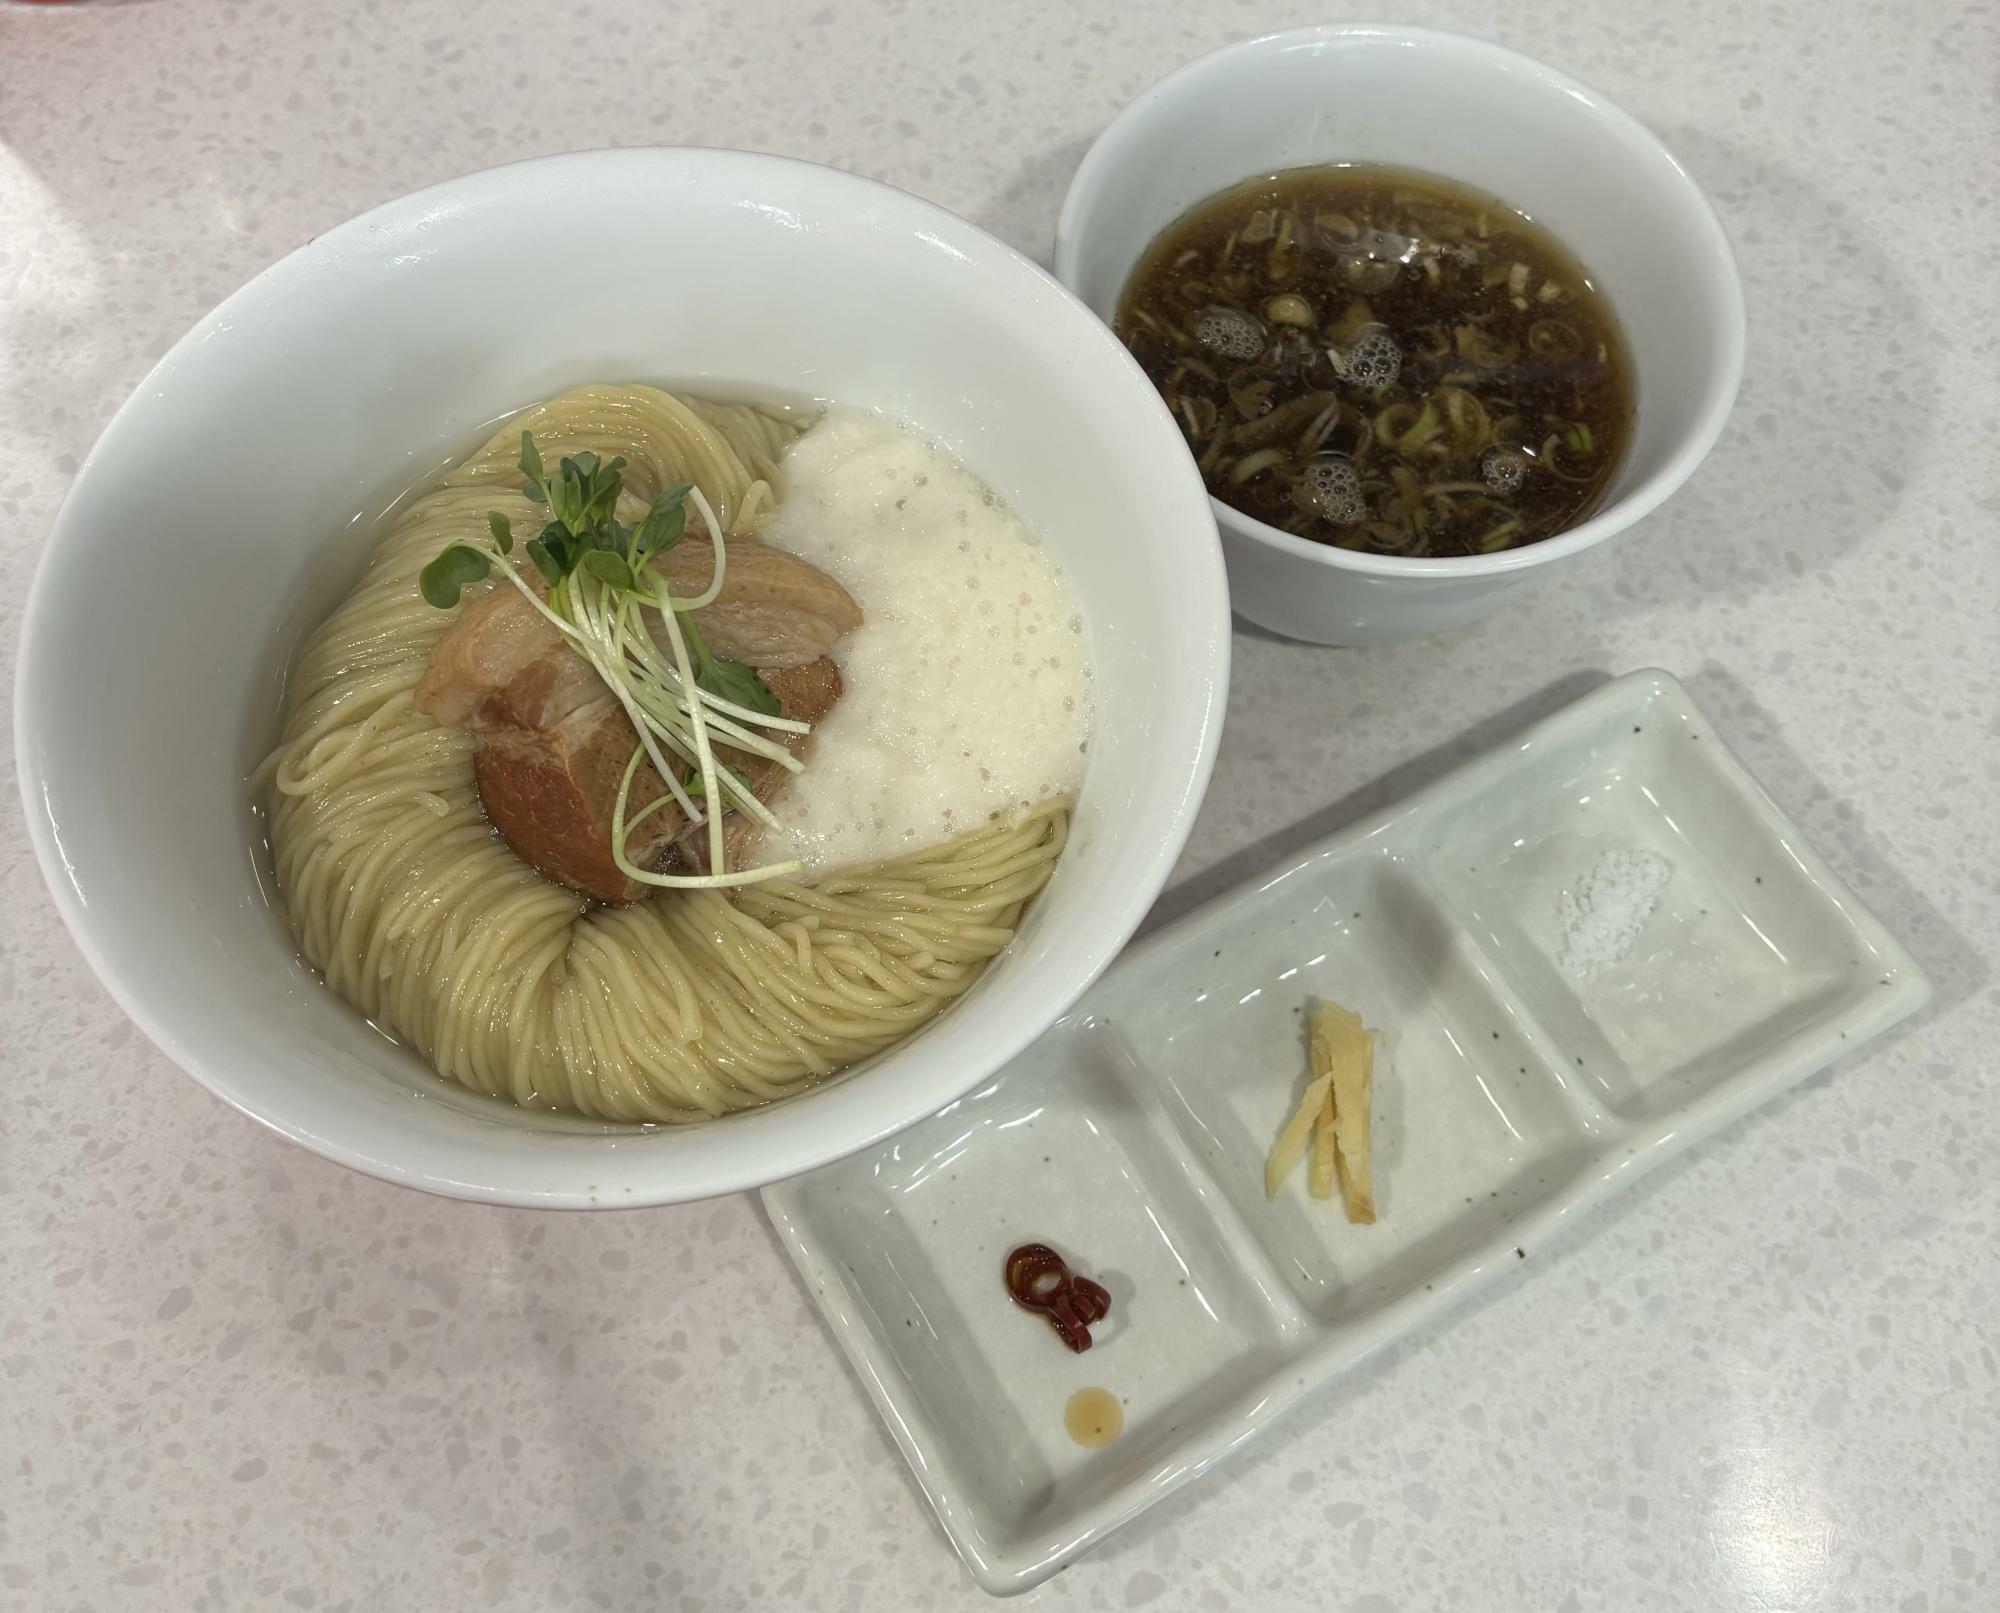 和出汁で食べるとろろ芋と昆布水の角煮つけ麺　1500円